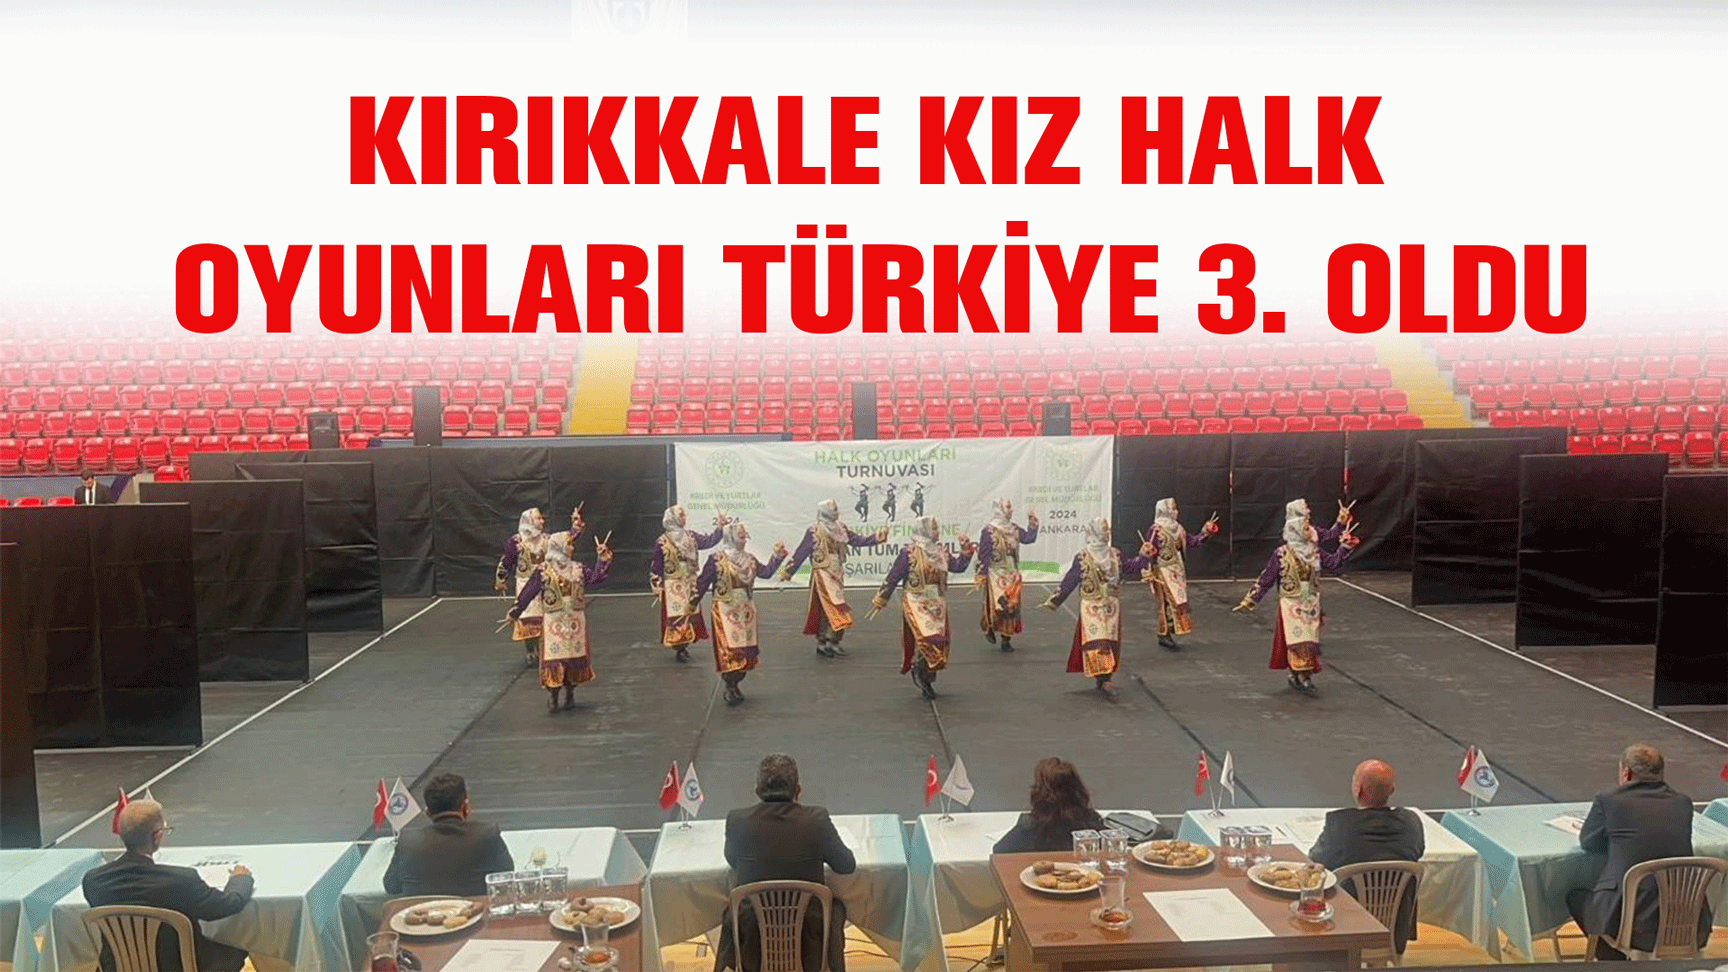 Kırıkkale Kız Halk oyunları Türkiye 3. oldu